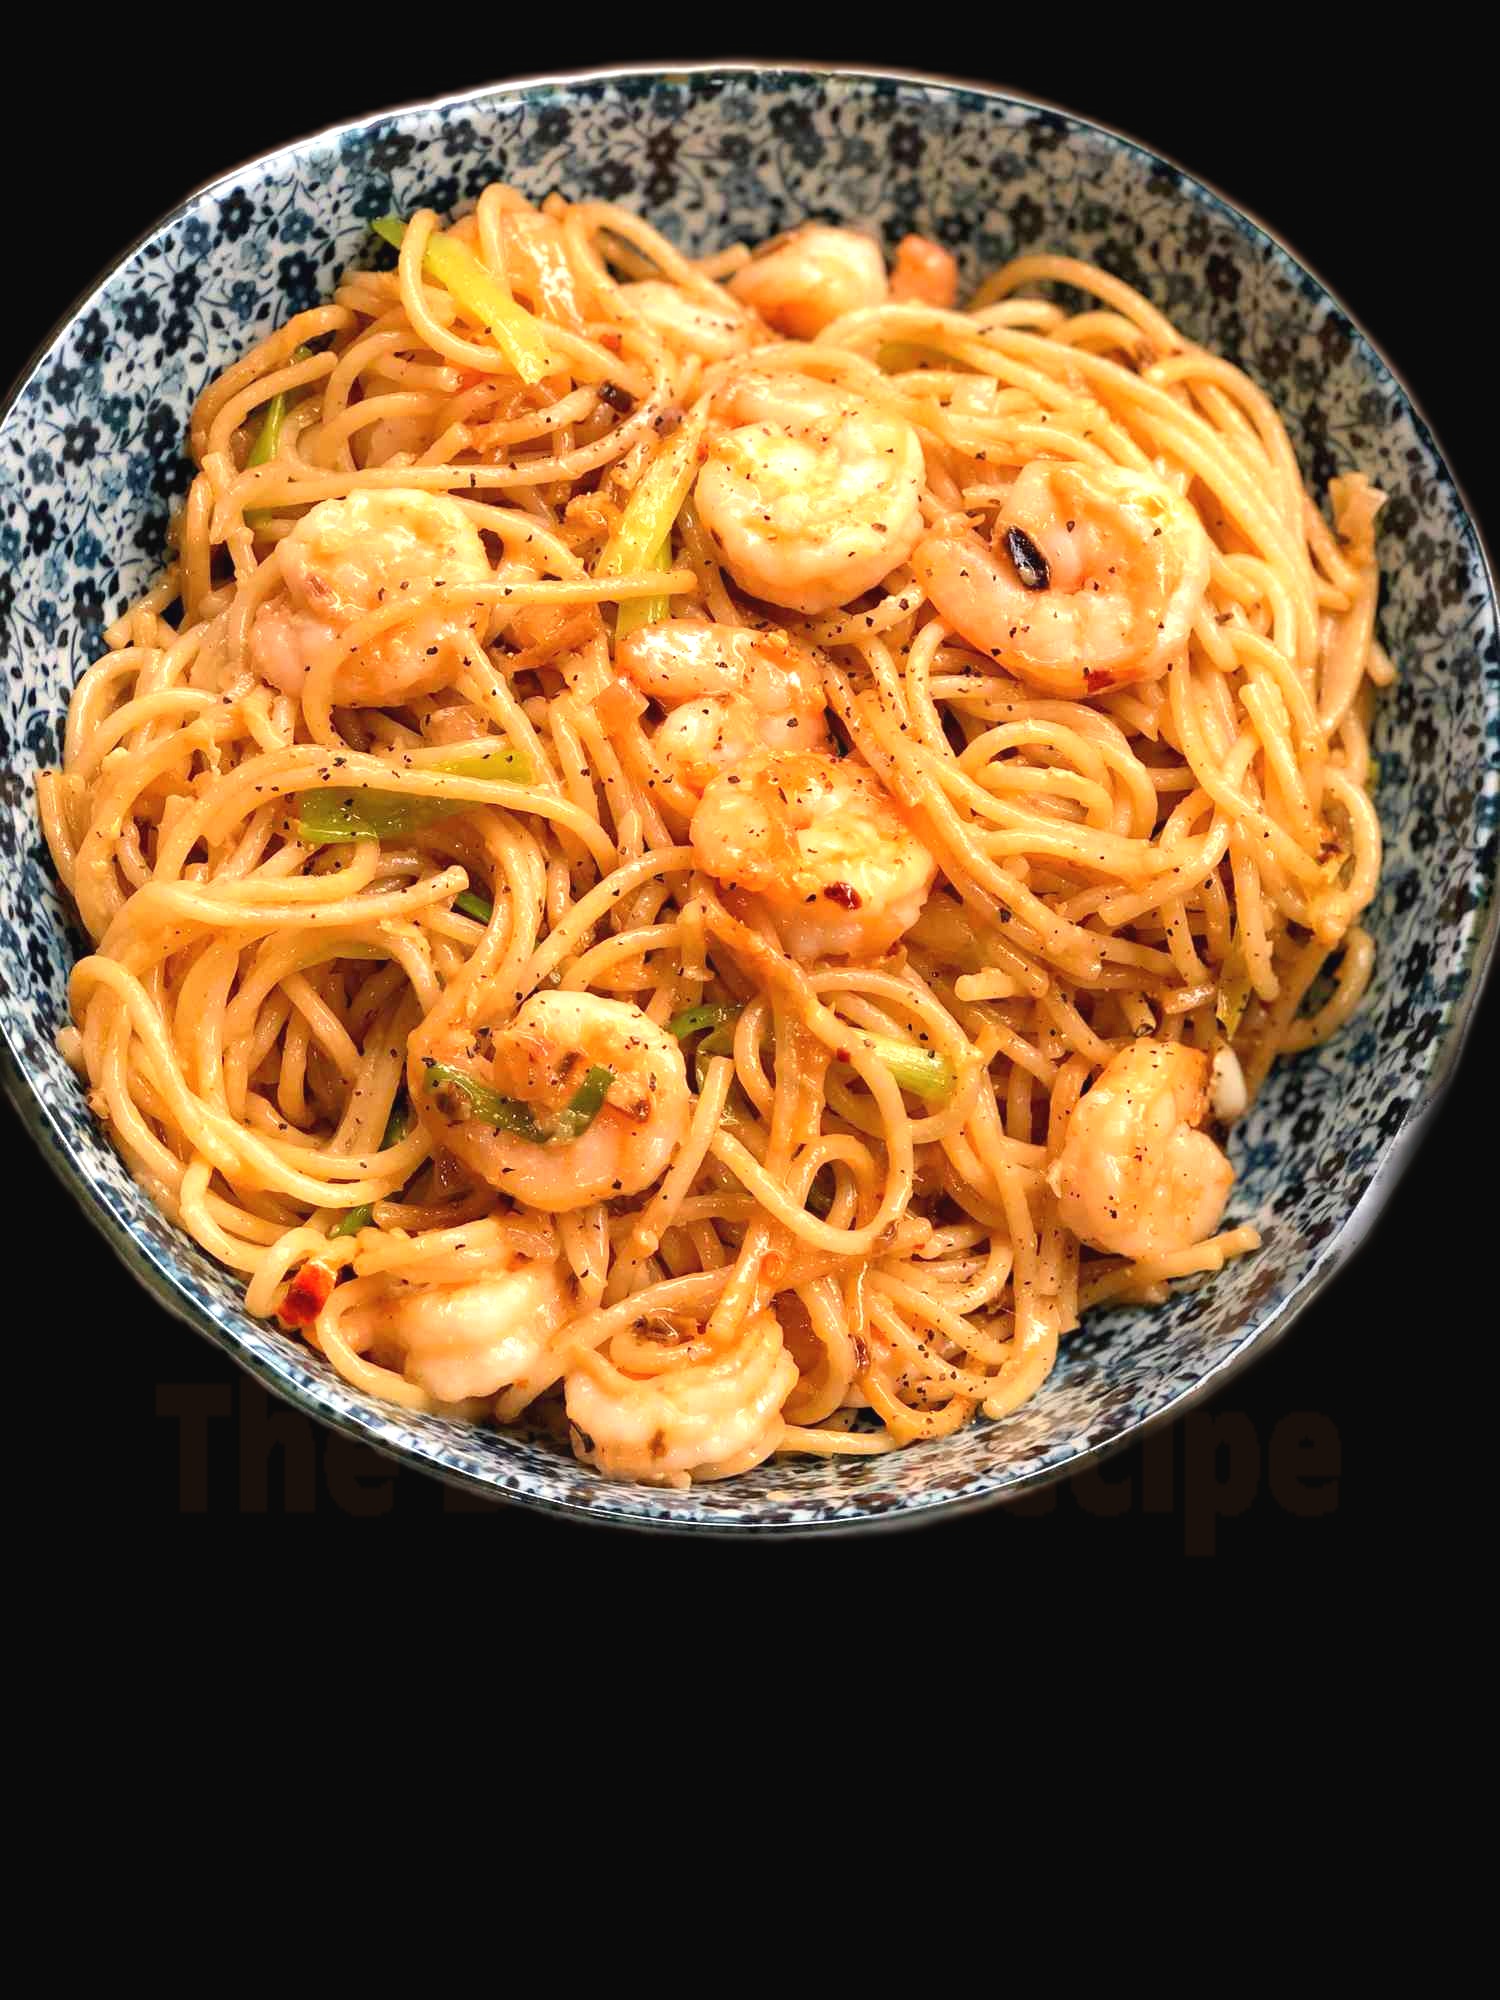 Shrimp and Noodles